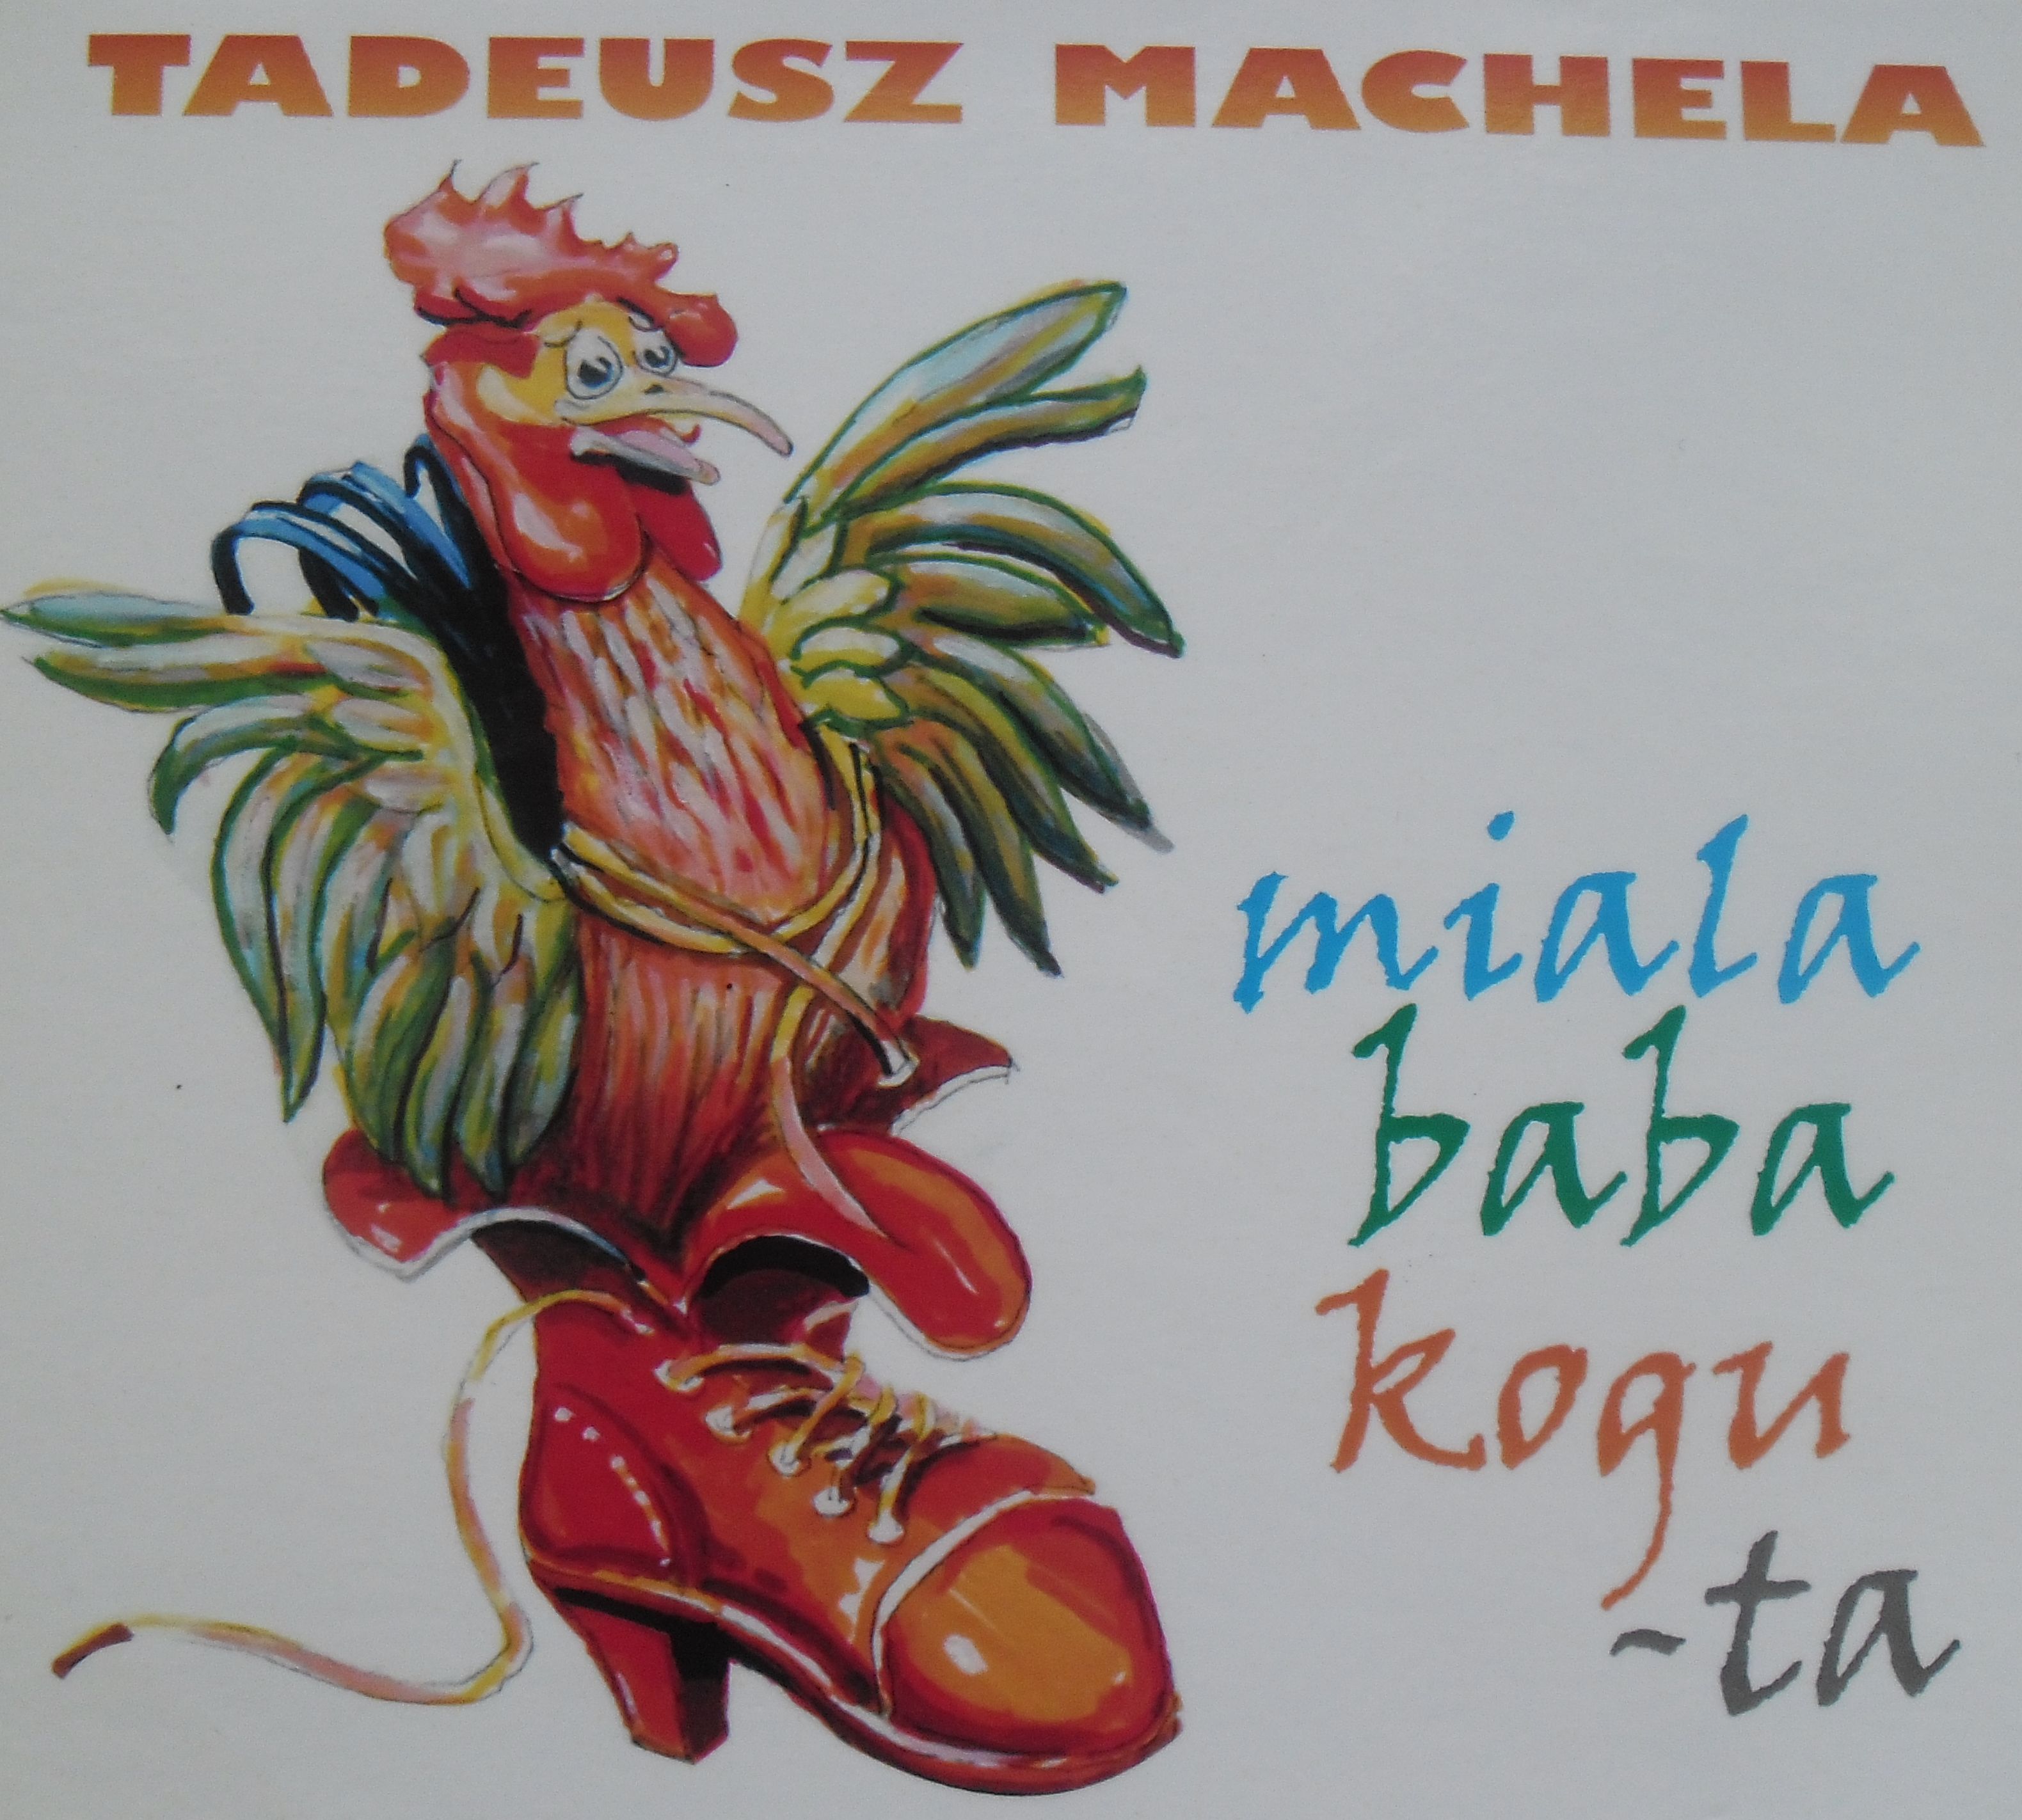 Miała baba koguta — nowa płyta Tadeusza Macheli. Spotkanie promocyjne w piątek